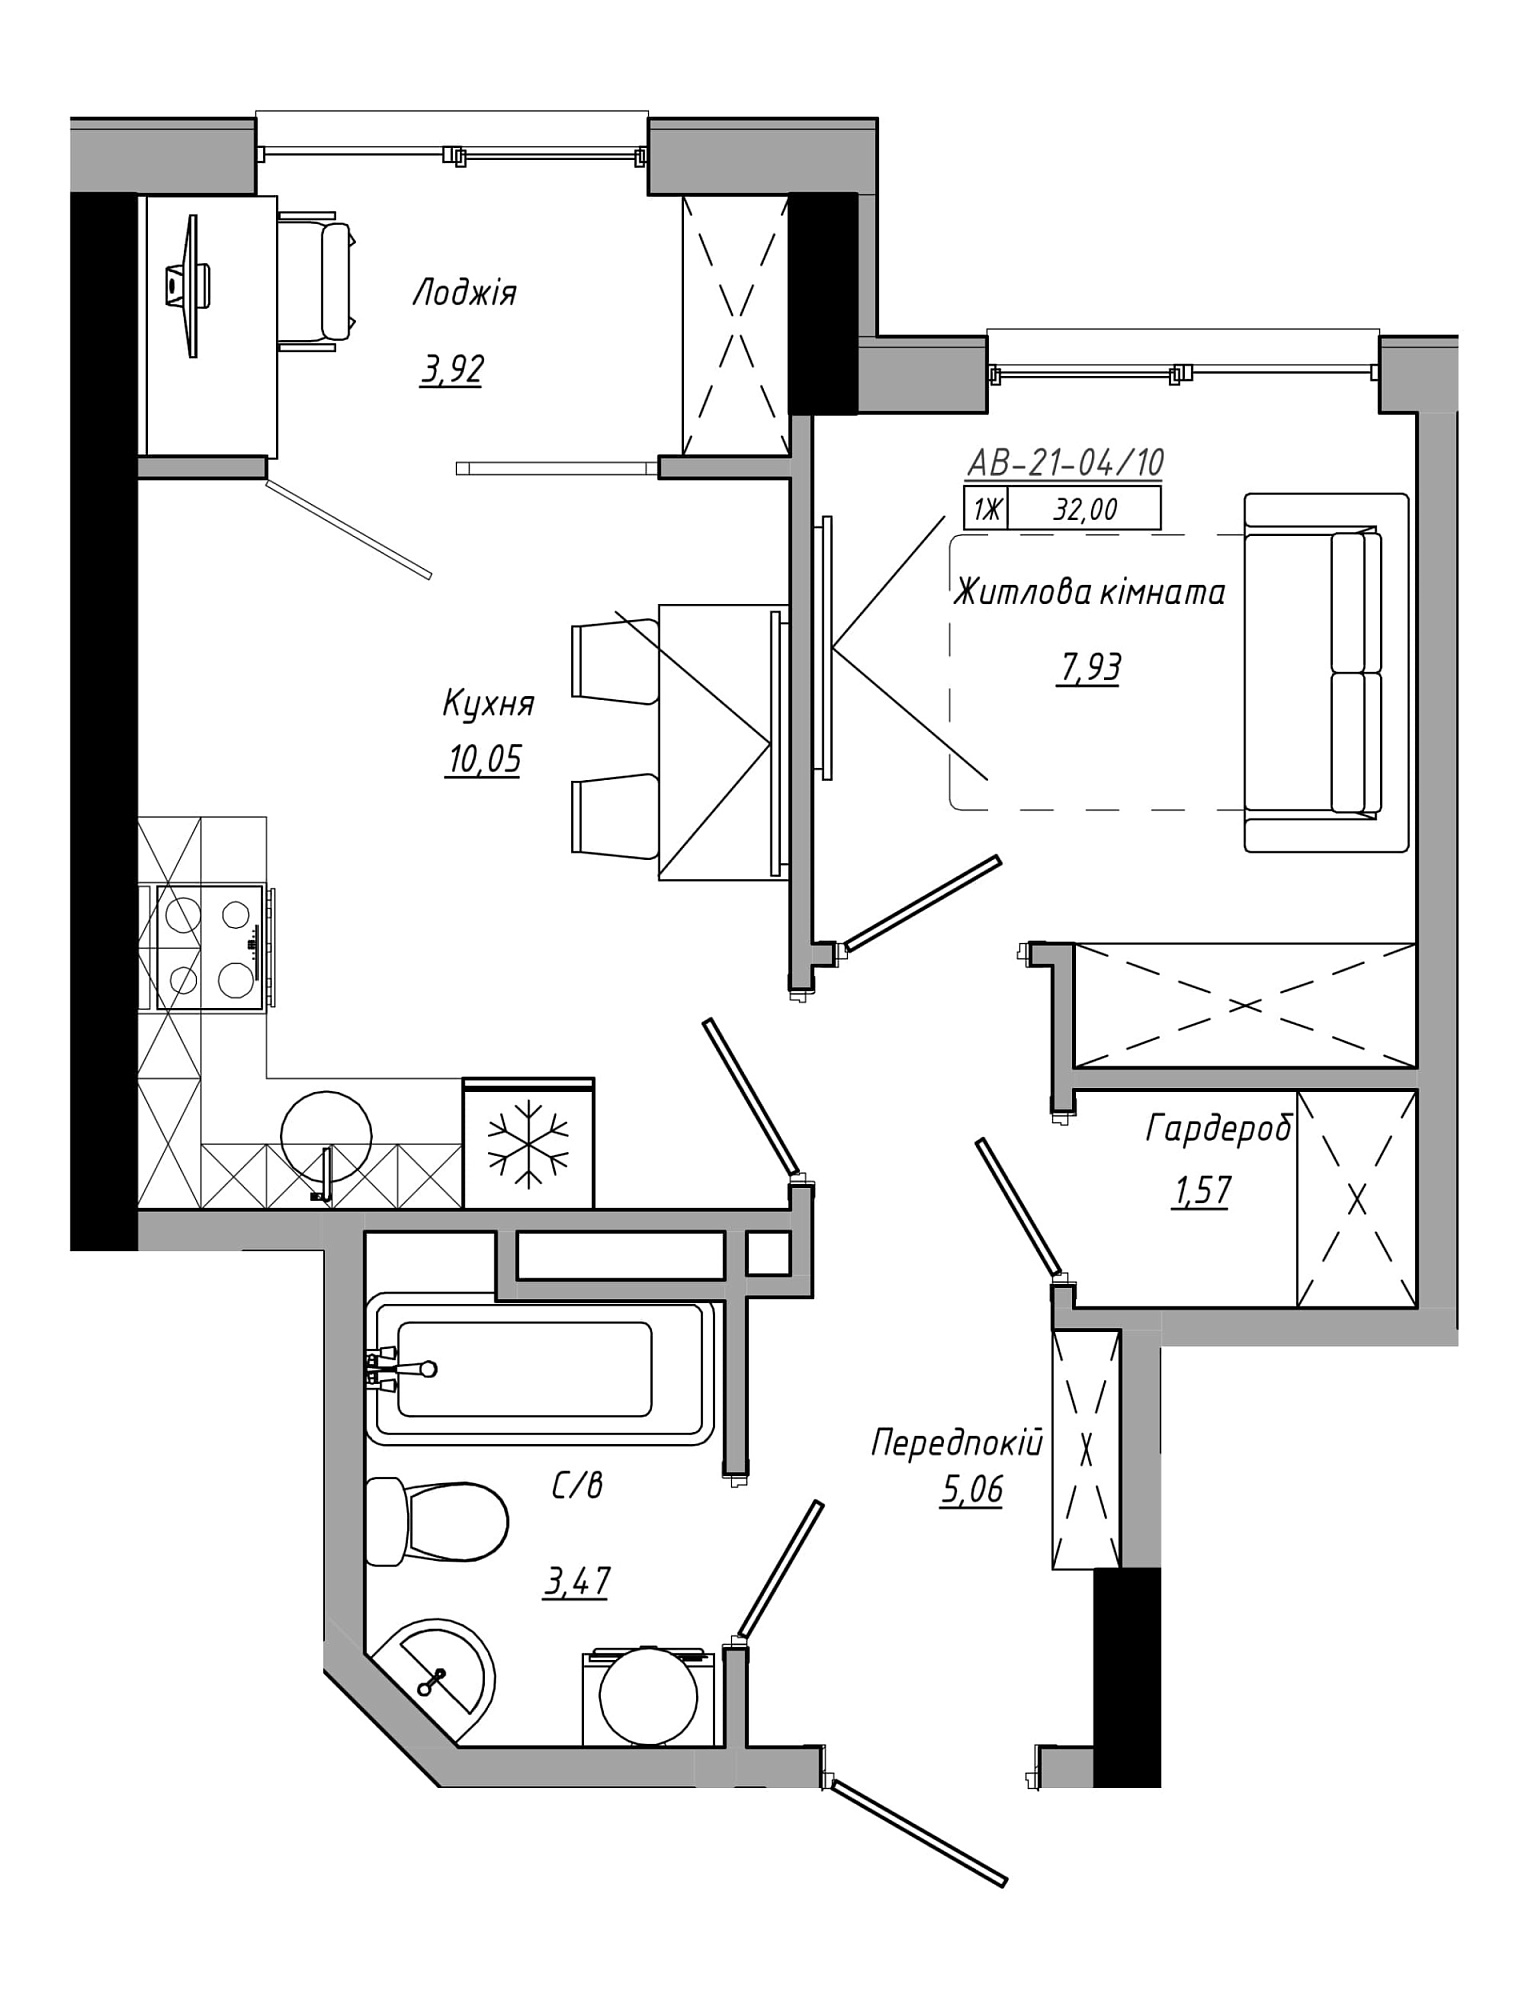 Планування 1-к квартира площею 32м2, AB-21-04/00010.